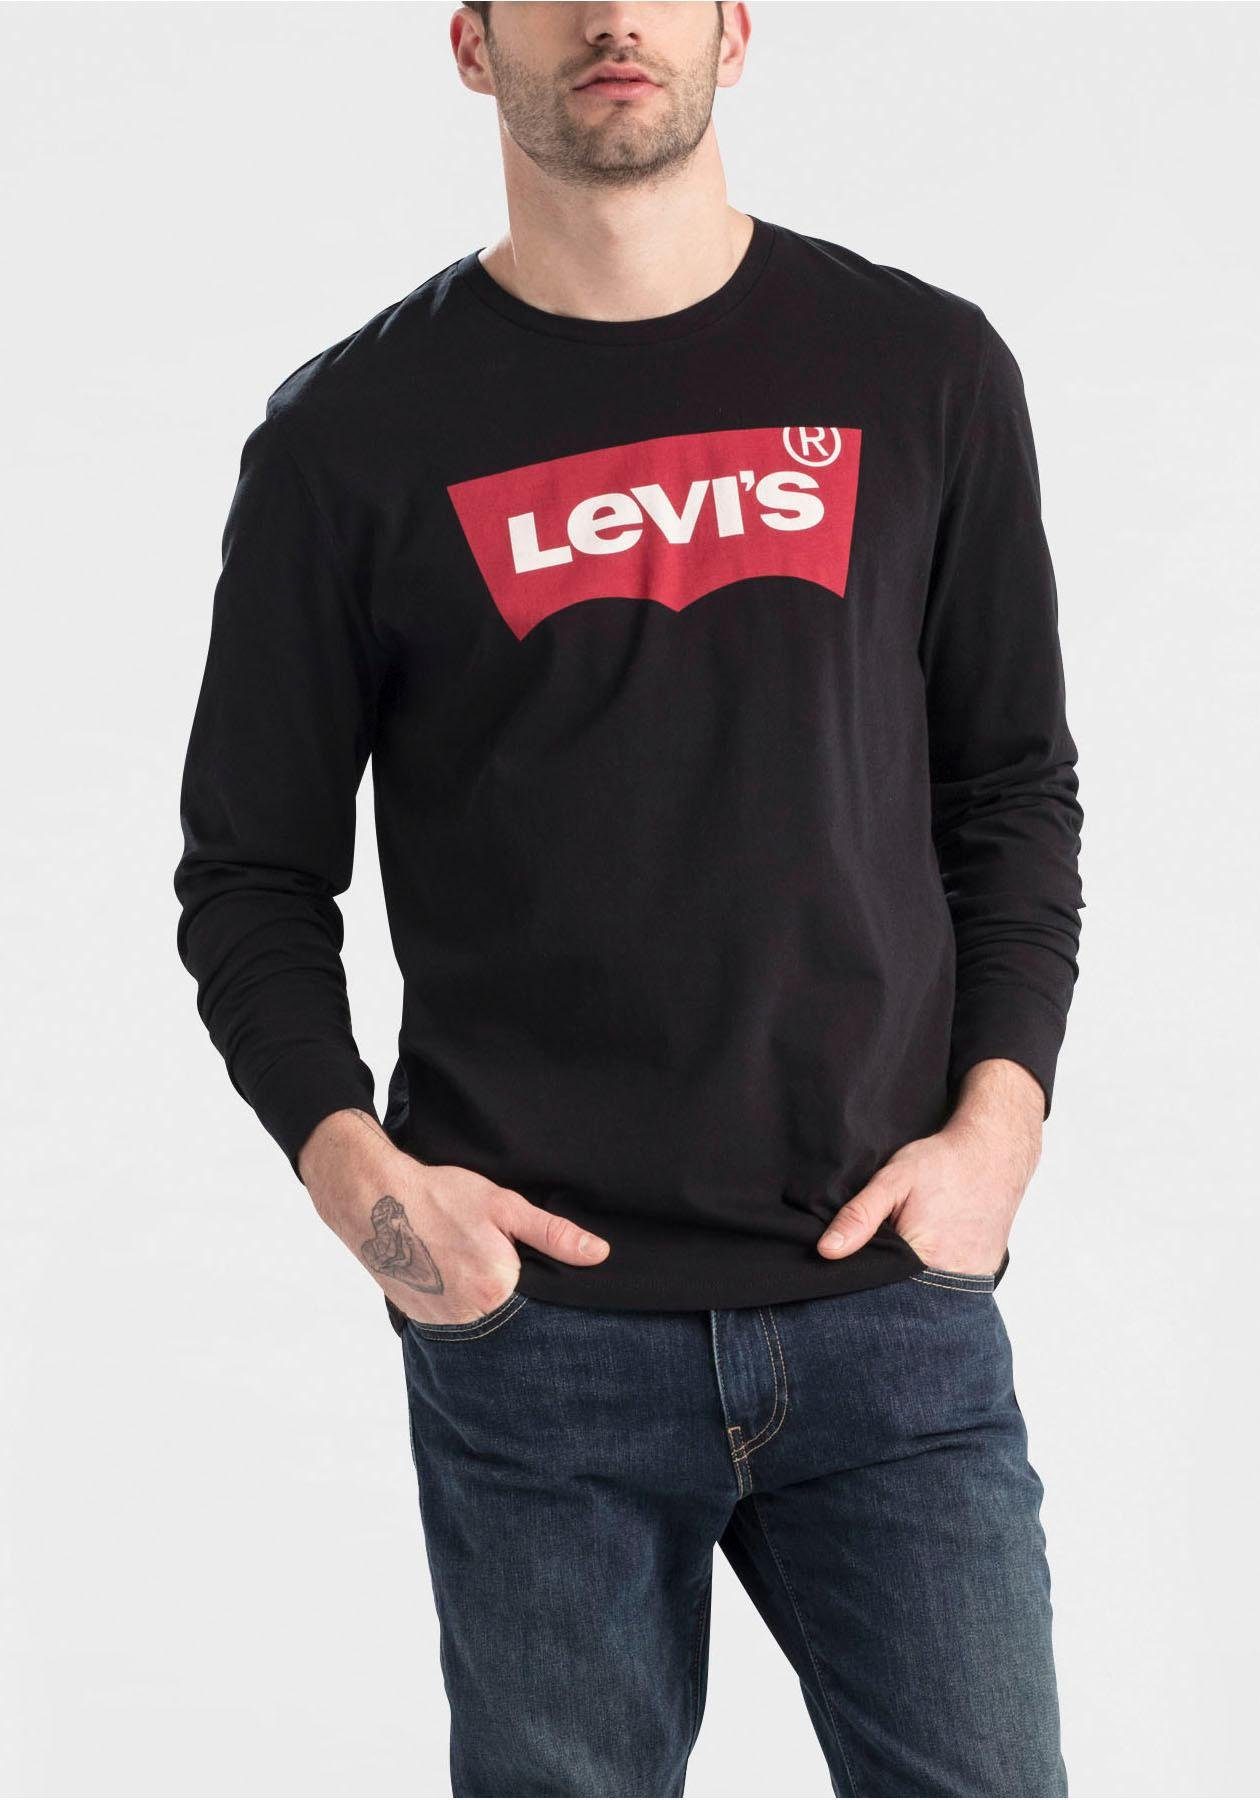 Levi's Herren Langarmshirts online kaufen | OTTO